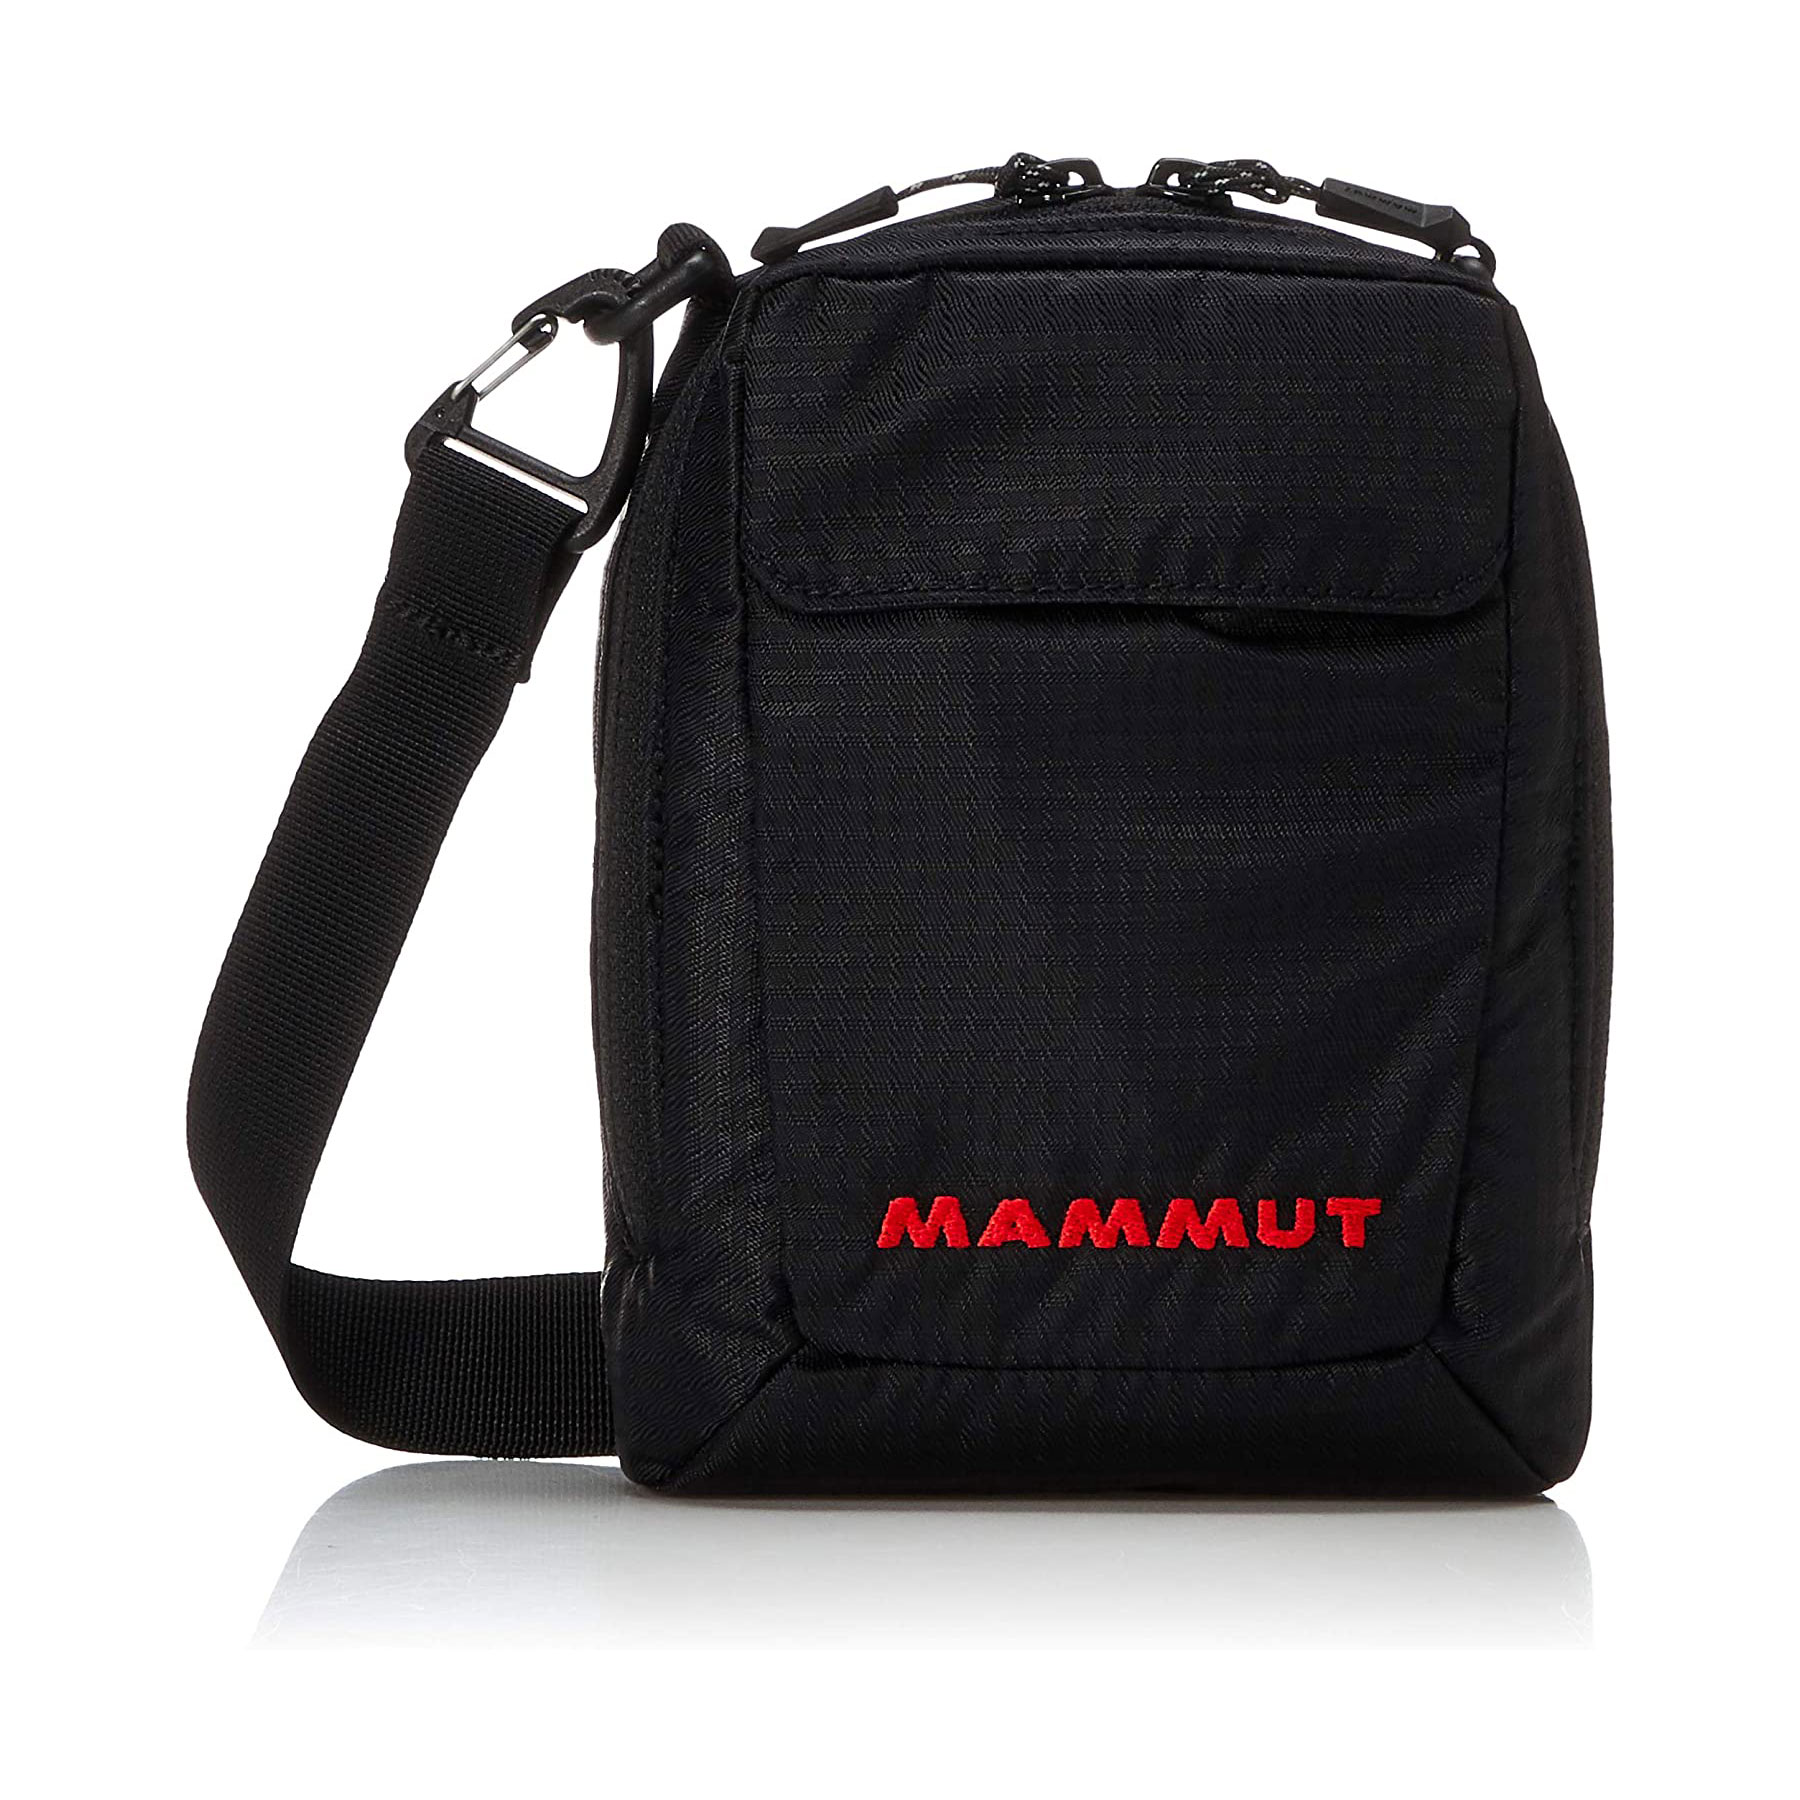 プライムデー】「MAMMUT（マムート）のバッグ」お買い得商品6選＆AmazonランキングTOP10！ ポーチ、リュックなどセール特価に【2022年7月13日】（1/3）  | ねとらぼ調査隊